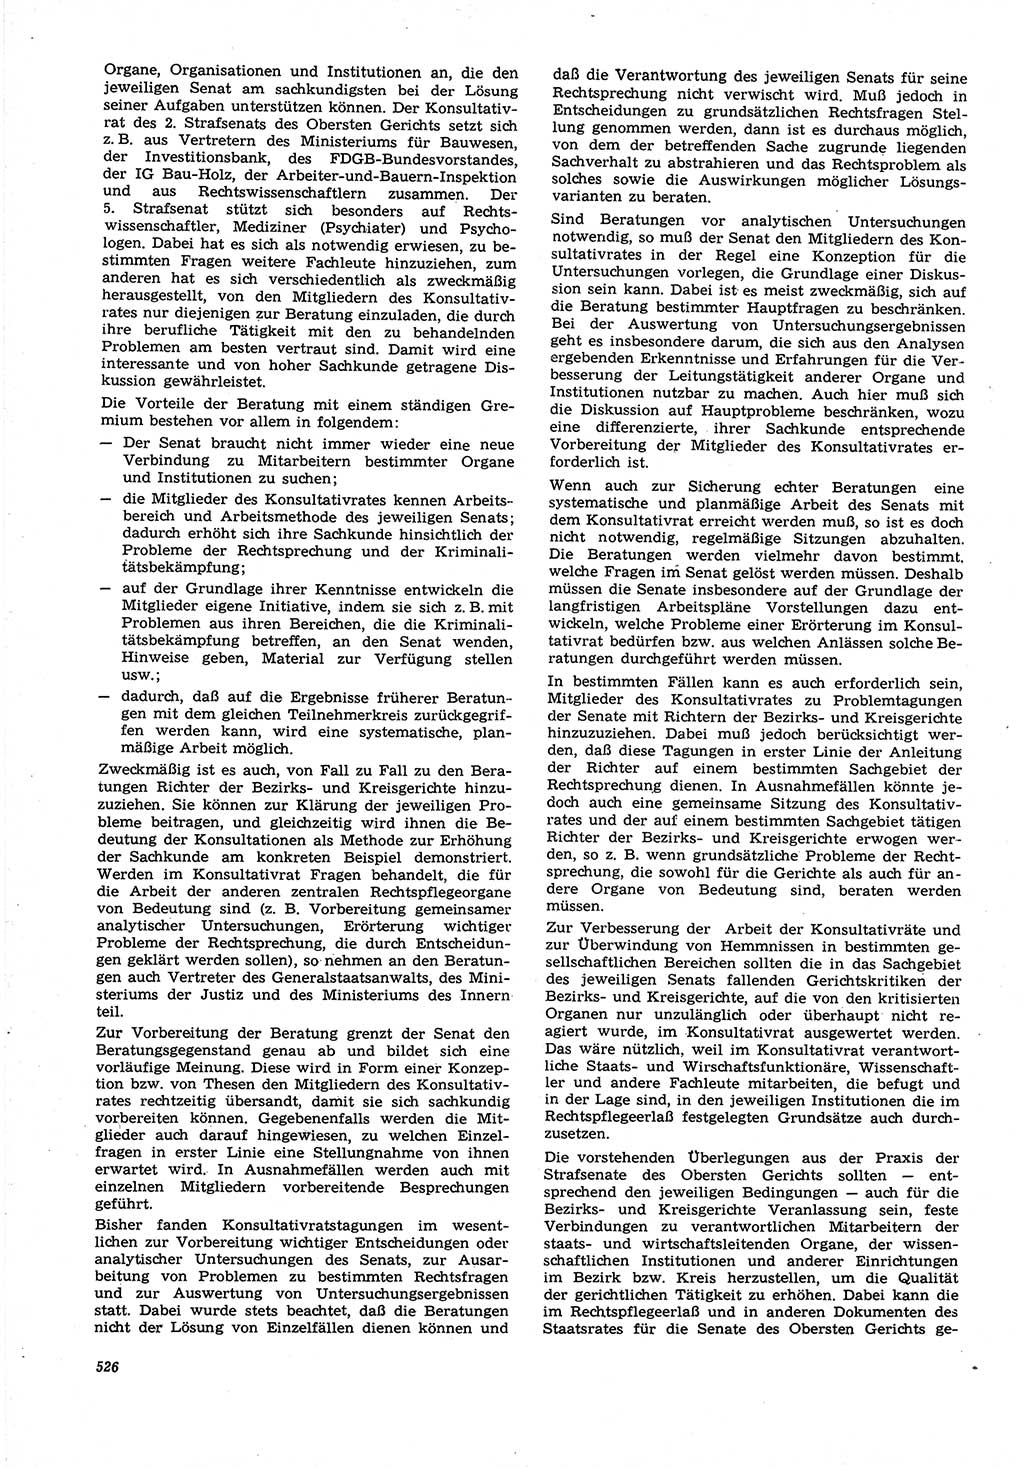 Neue Justiz (NJ), Zeitschrift für Recht und Rechtswissenschaft [Deutsche Demokratische Republik (DDR)], 21. Jahrgang 1967, Seite 526 (NJ DDR 1967, S. 526)